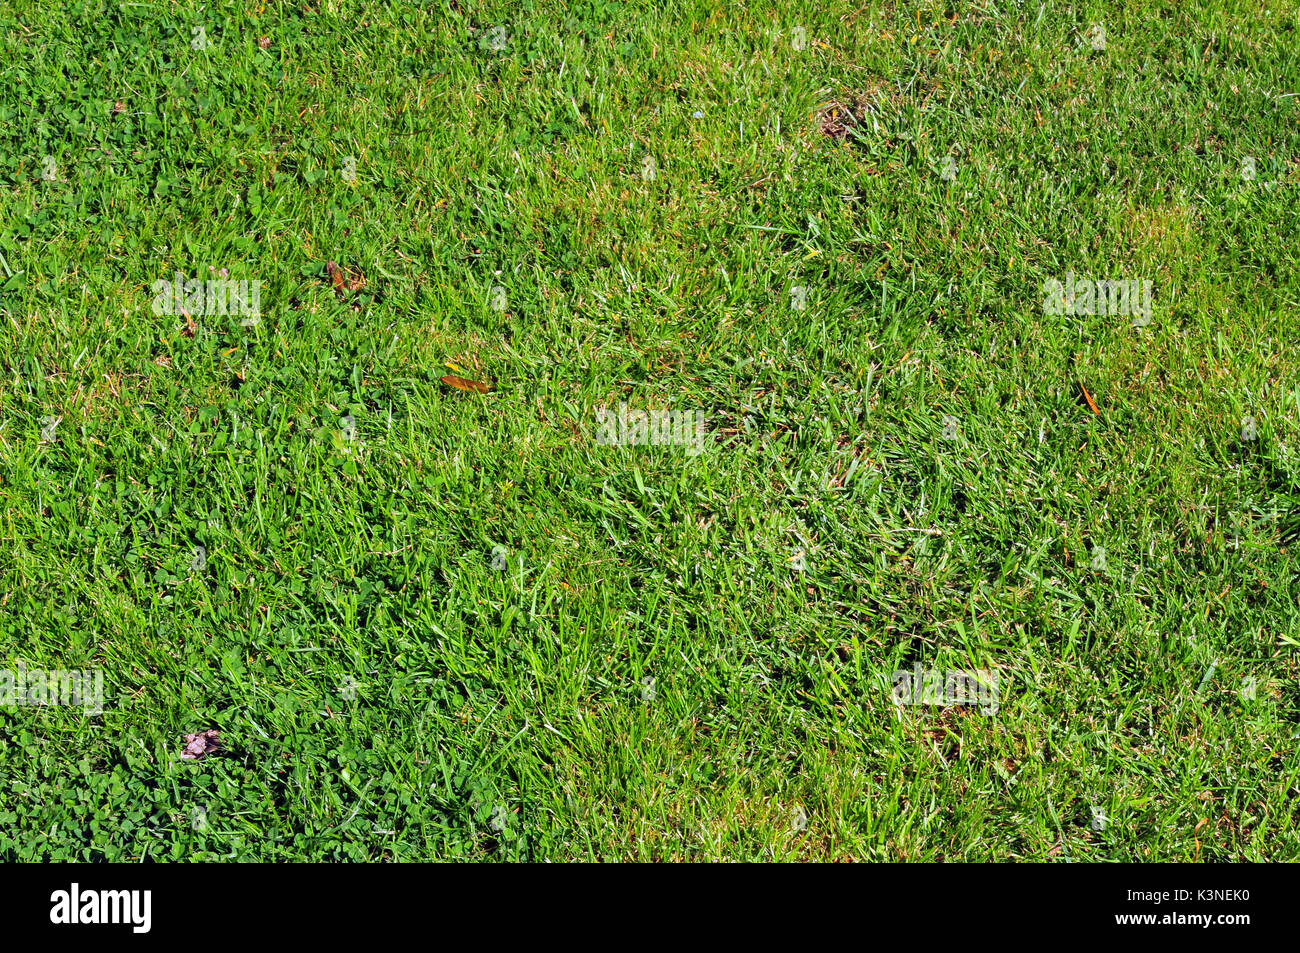 Ein Patch von grünem Gras mit Patches oder Krankheit Probleme, Gras braun Ameisen und Käfer Schädlinge Rasen schädliche Insekten oder Behandlungen für Braun. Stockfoto